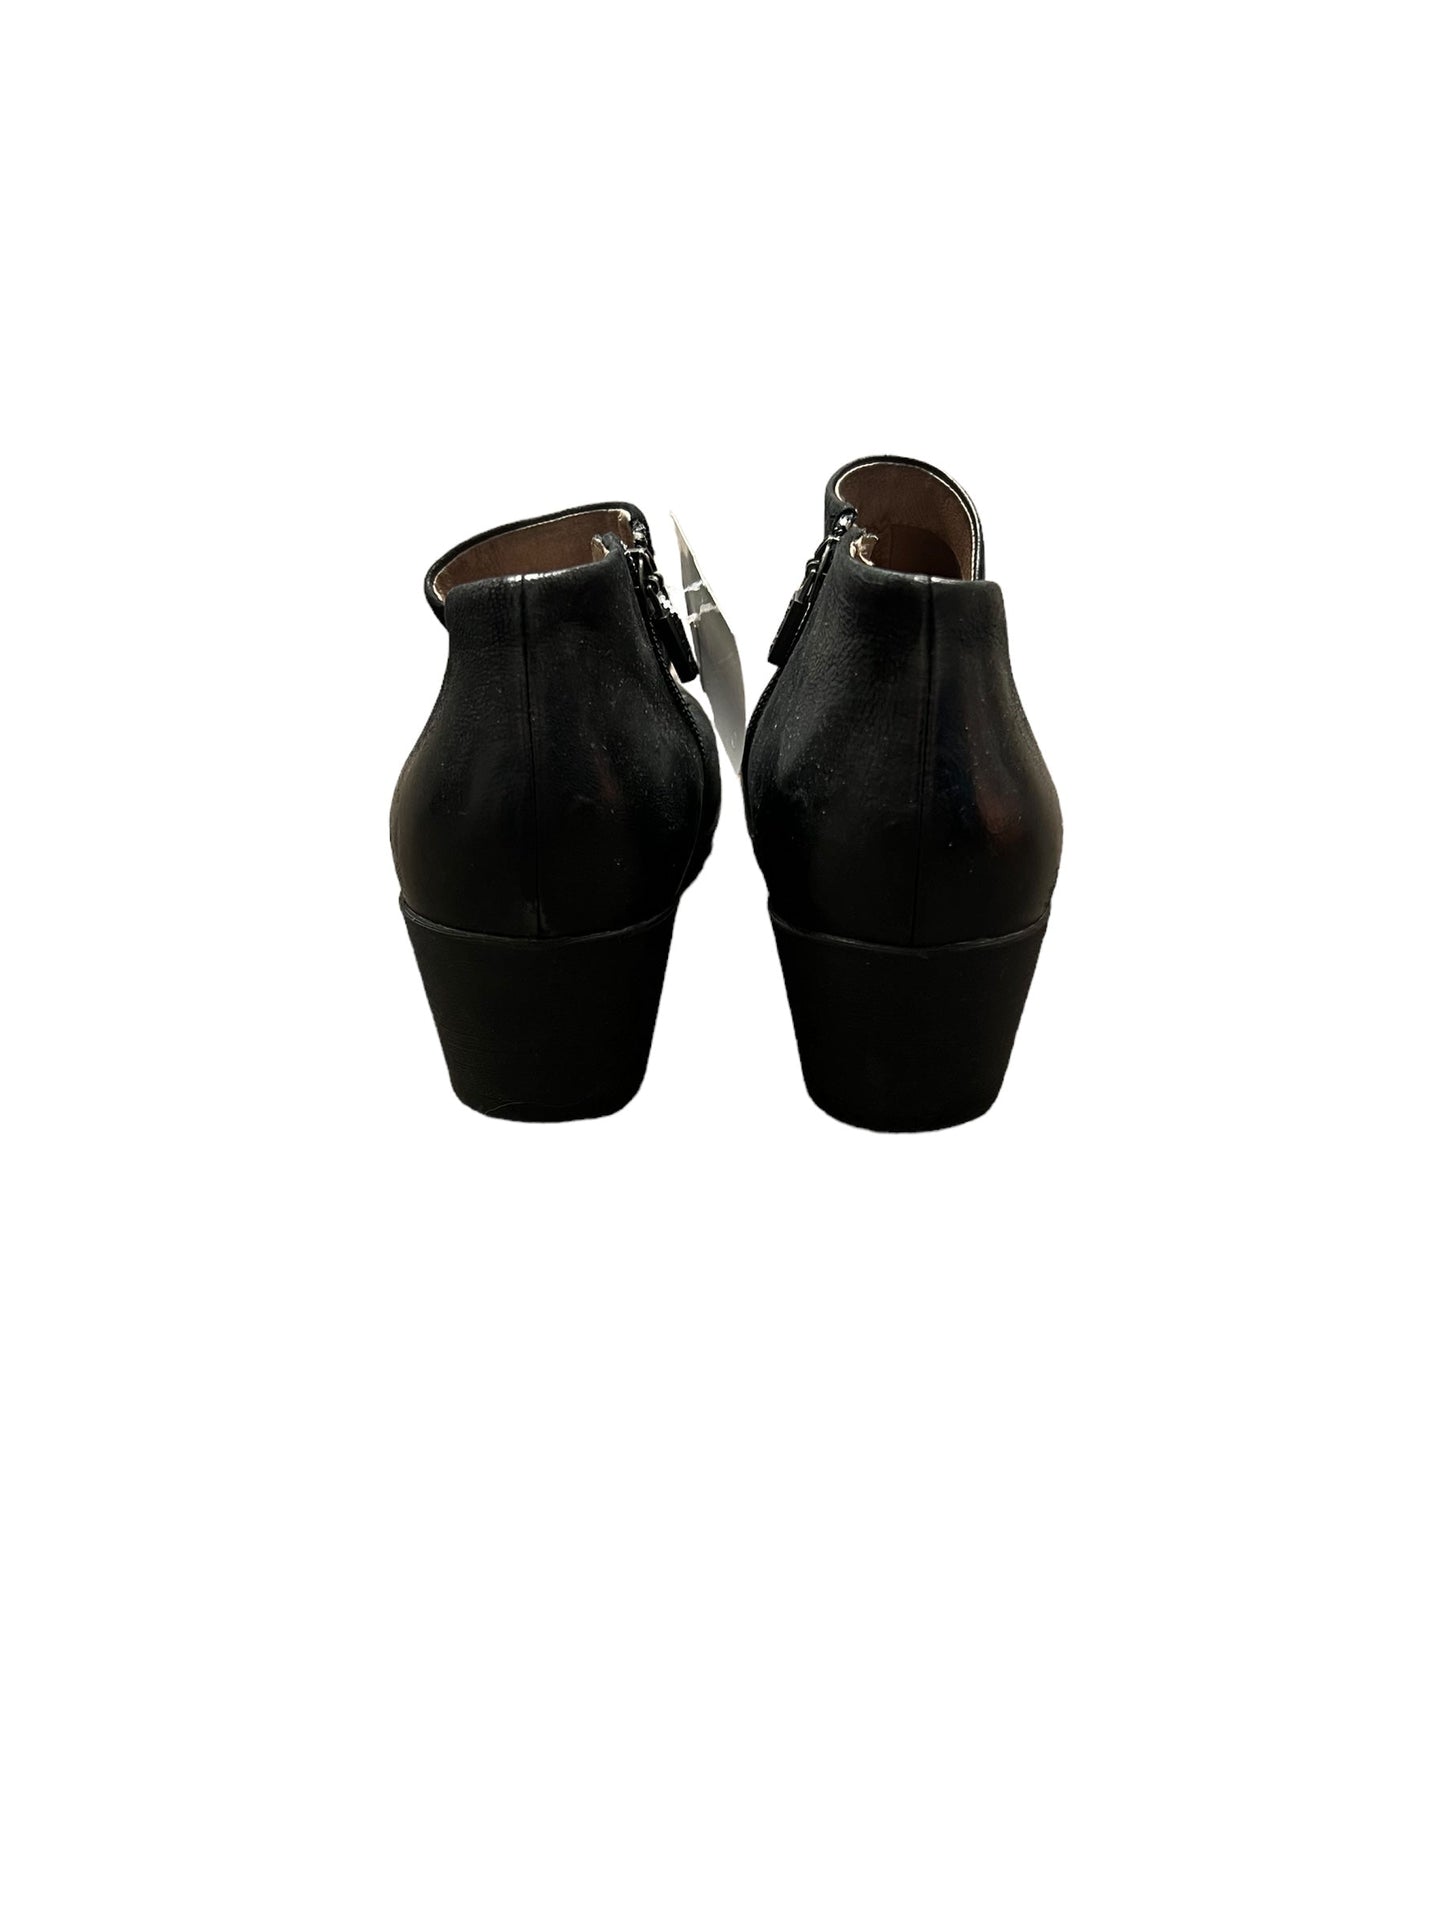 Boots Ankle Heels By Dansko  Size: 7.5